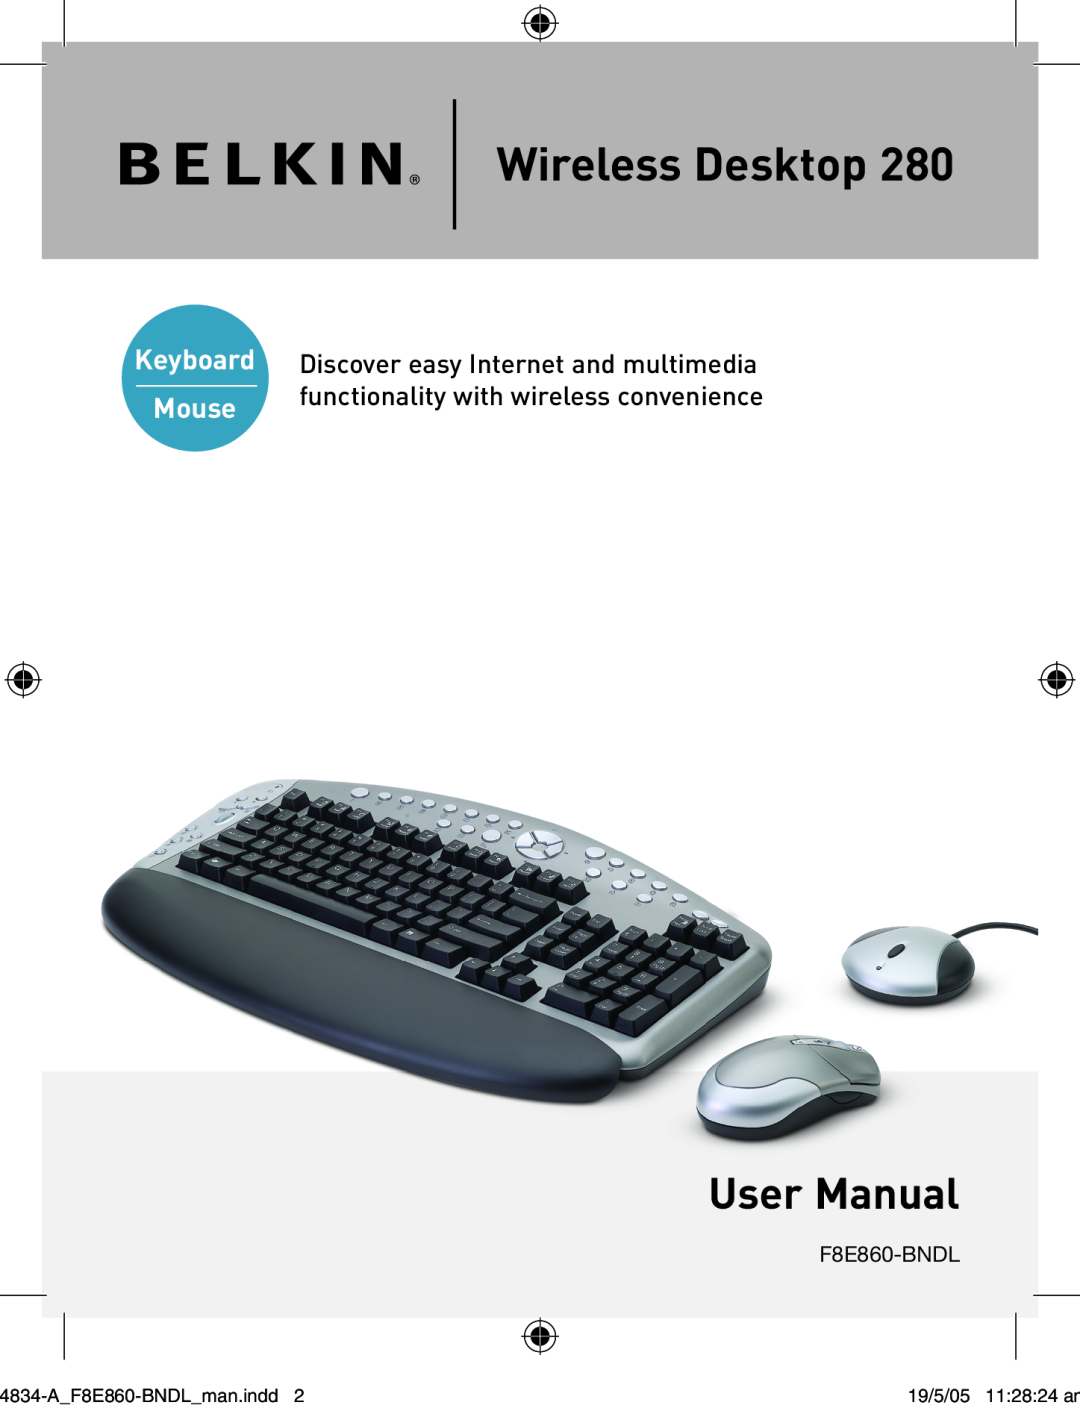 Belkin 280 manual Wireless Desktop, Mouse 